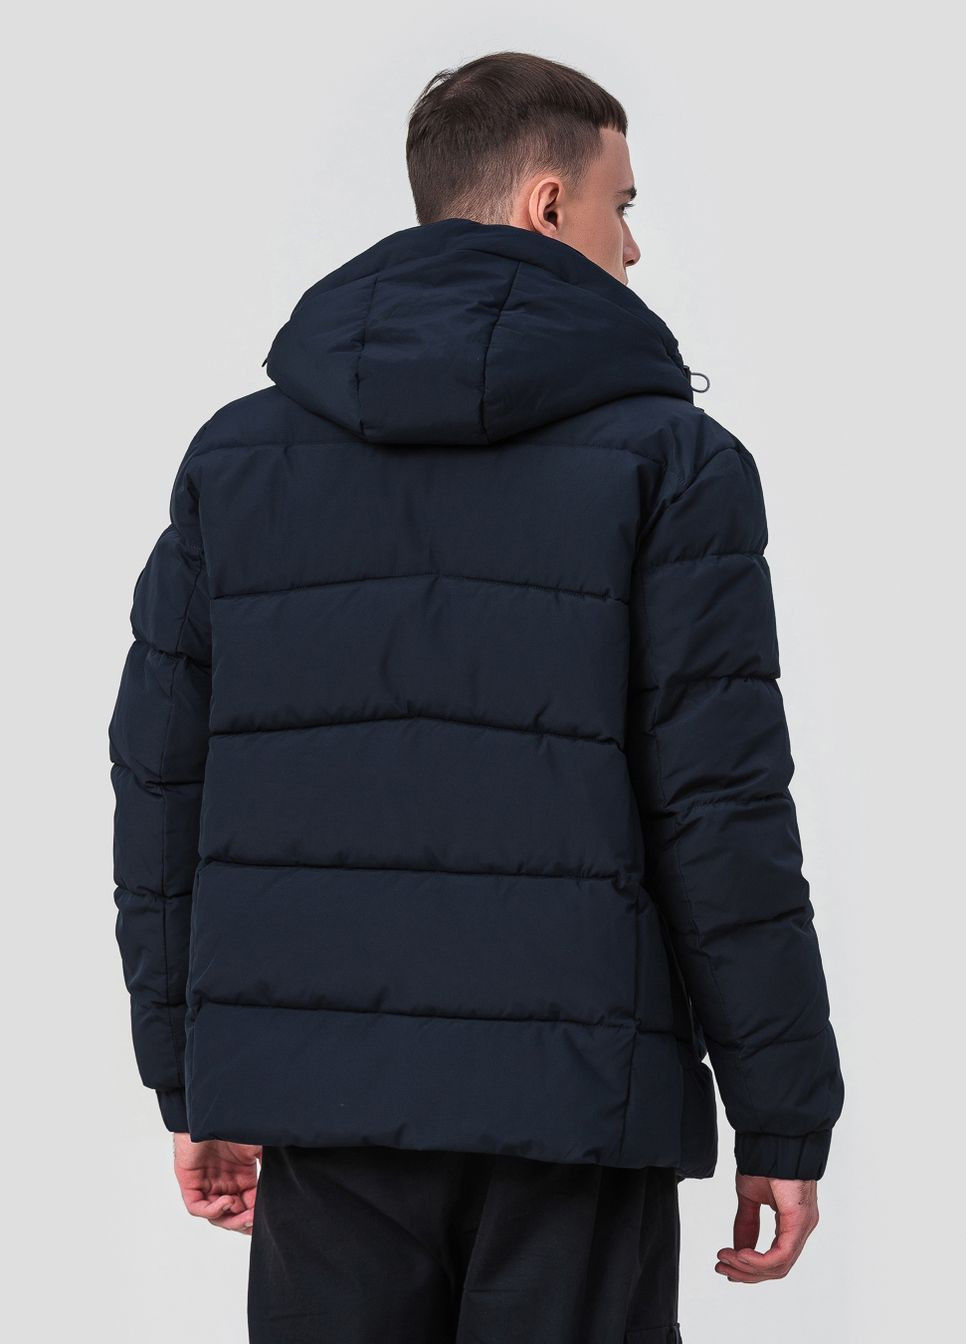 Синяя зимняя стильная мужская куртка с модель 23-2227 Black Vinyl